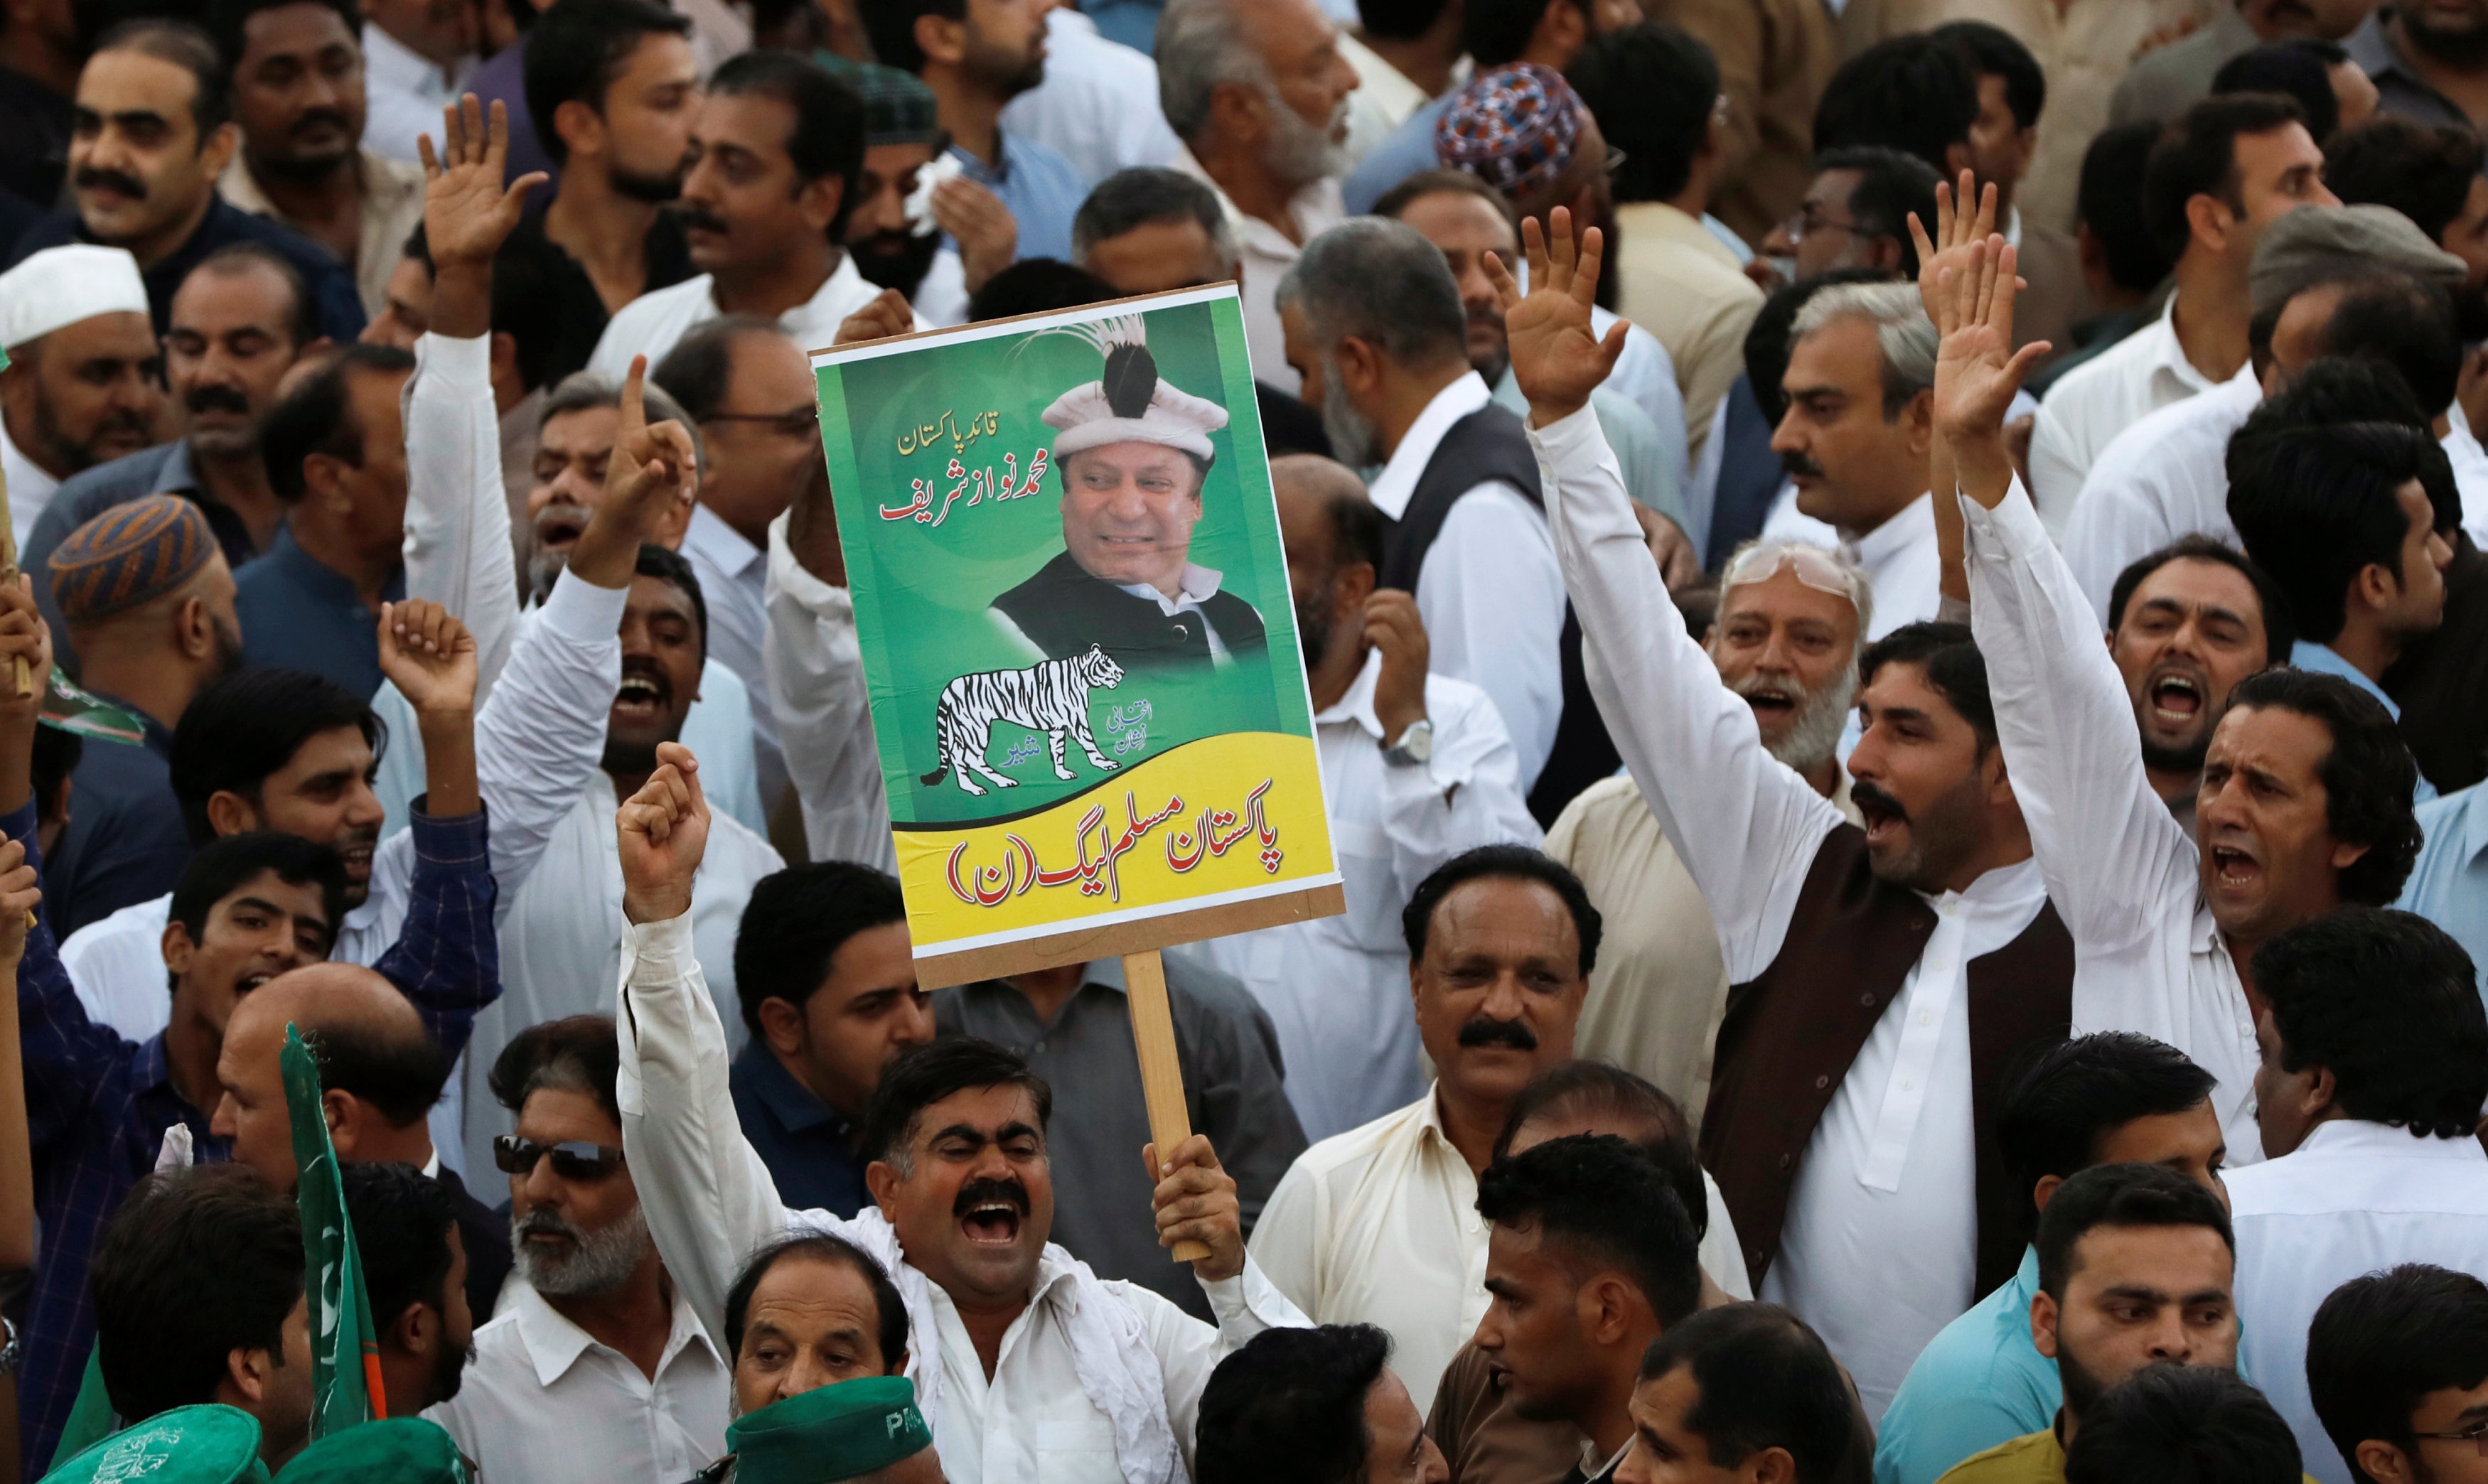 [포토] 샤리프(Saharif) 전 파키스탄 총리의 석방에 환호하는 지지자들